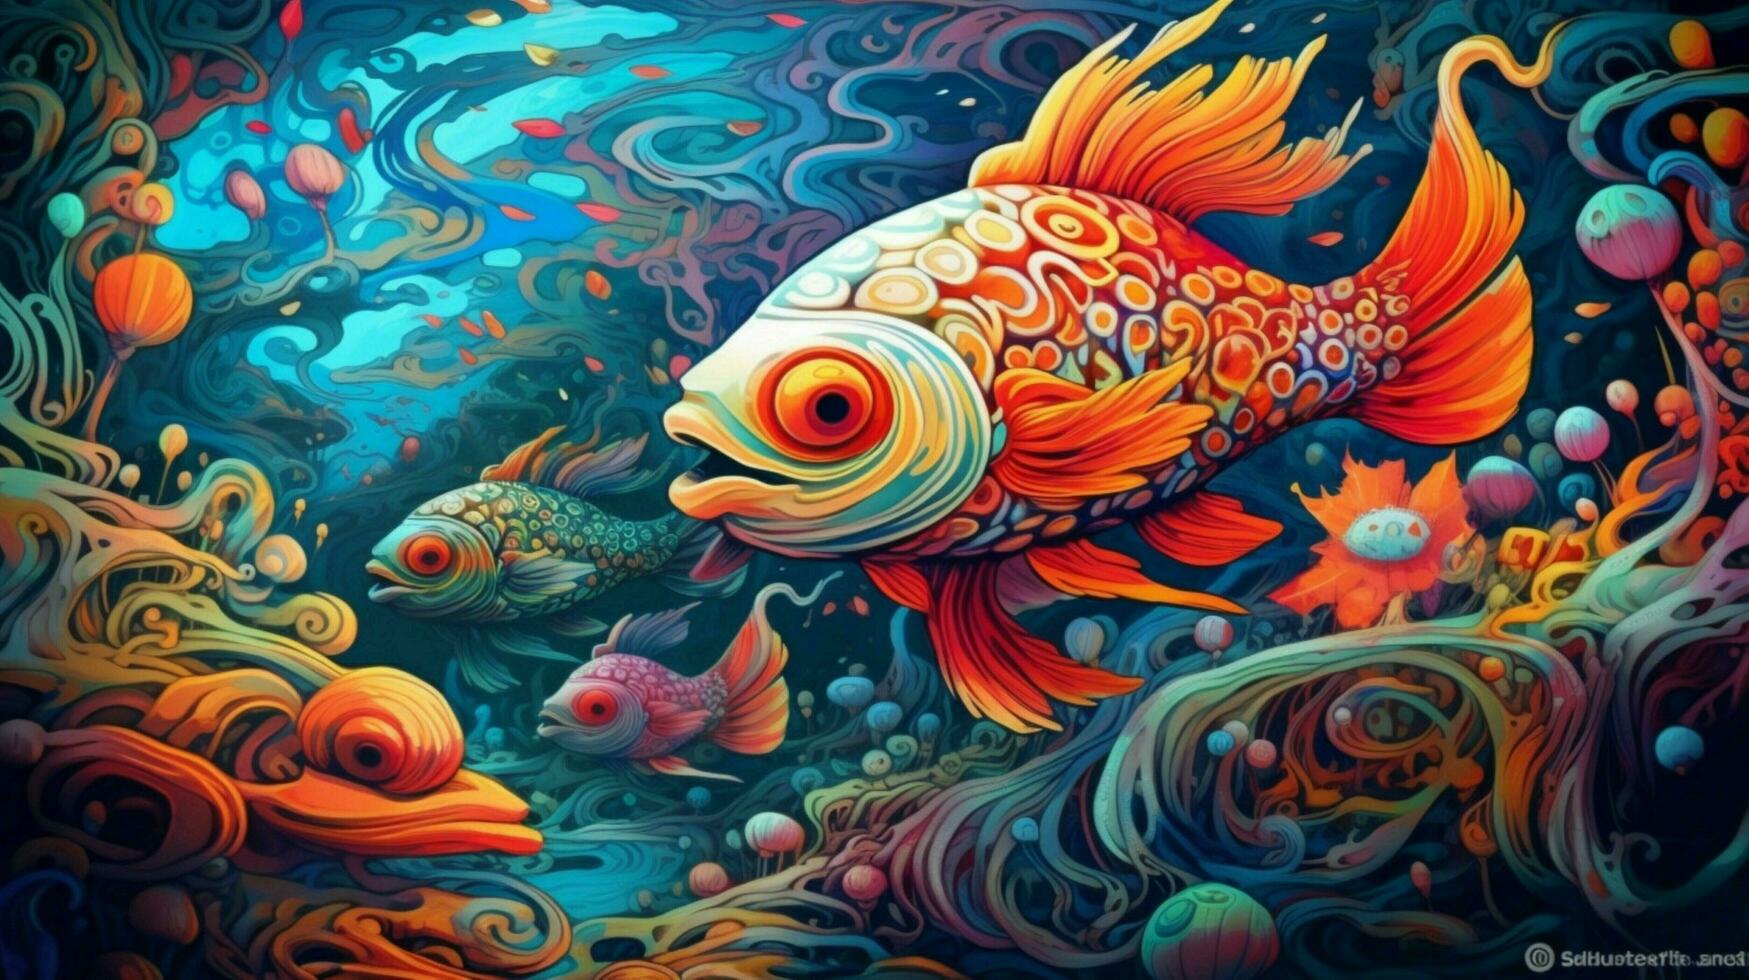 trippy fisk simning i psychedelic under vattnet foto